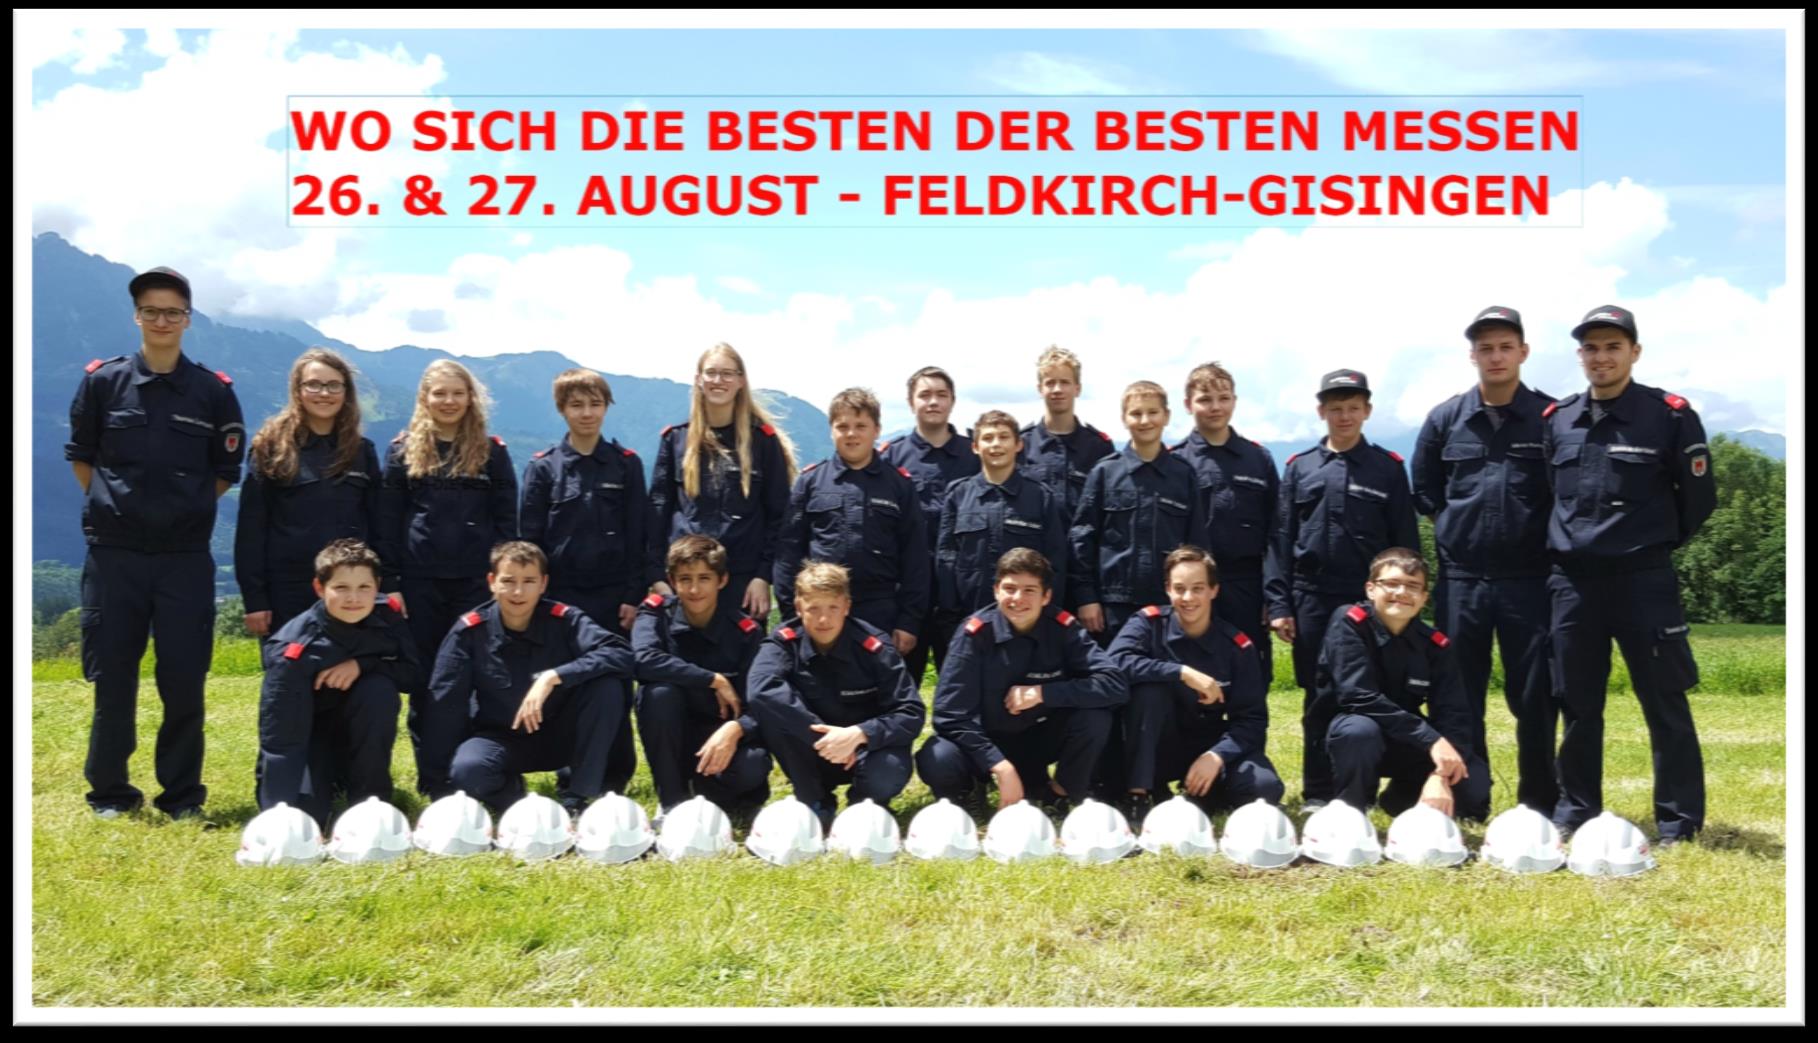 Willkommen in Feldkirch-Gisingen Die Freiwillige Ortsfeuerwehr Feldkirch-Gisingen begrüßt alle Teilnehmer und Gäste der 21. Bundesfeuerwehrjungendleistungsbewerbe 2016 vom 26. bis 27. August 2016.